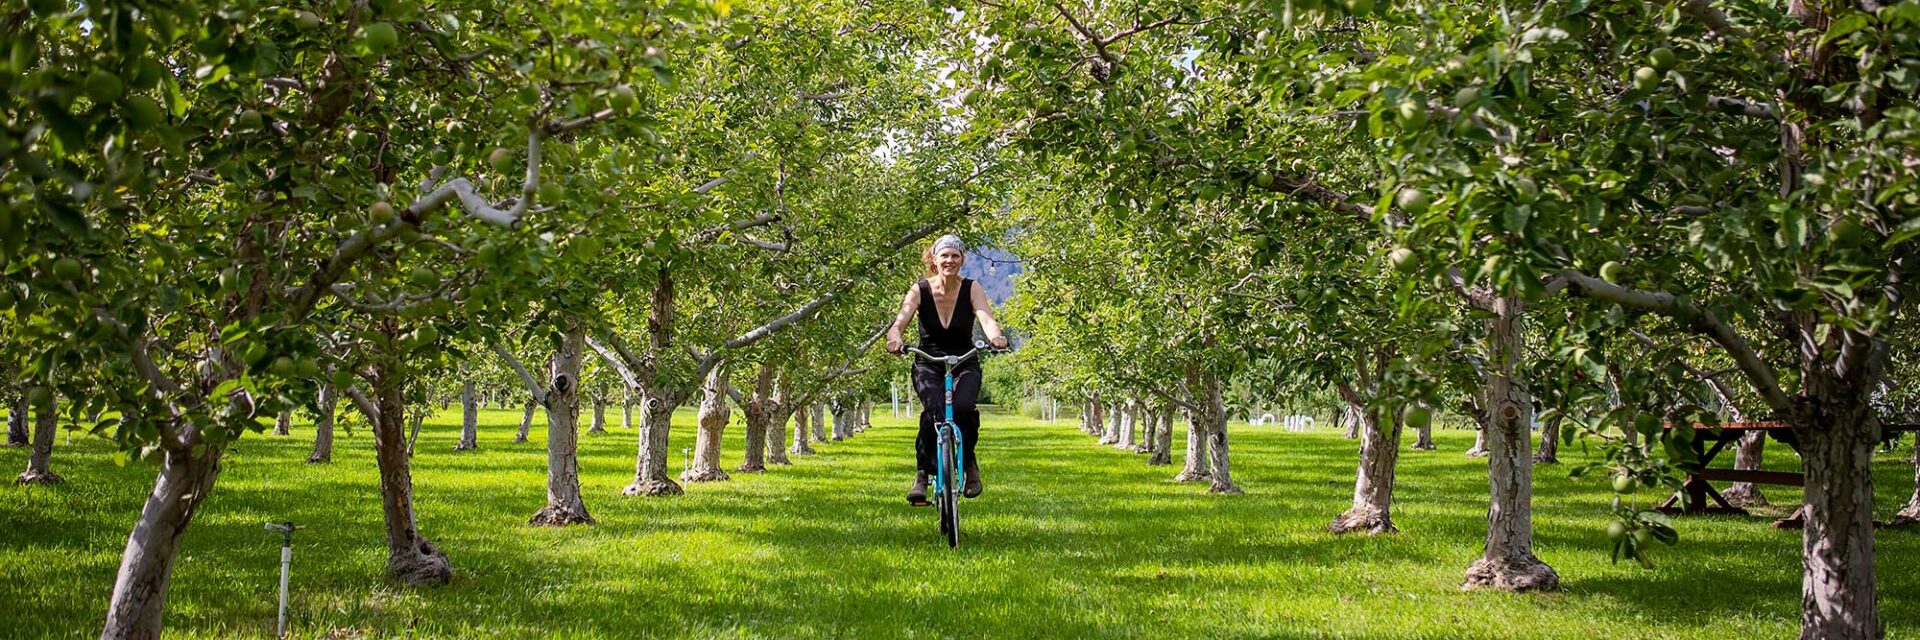 Biking in an orchard